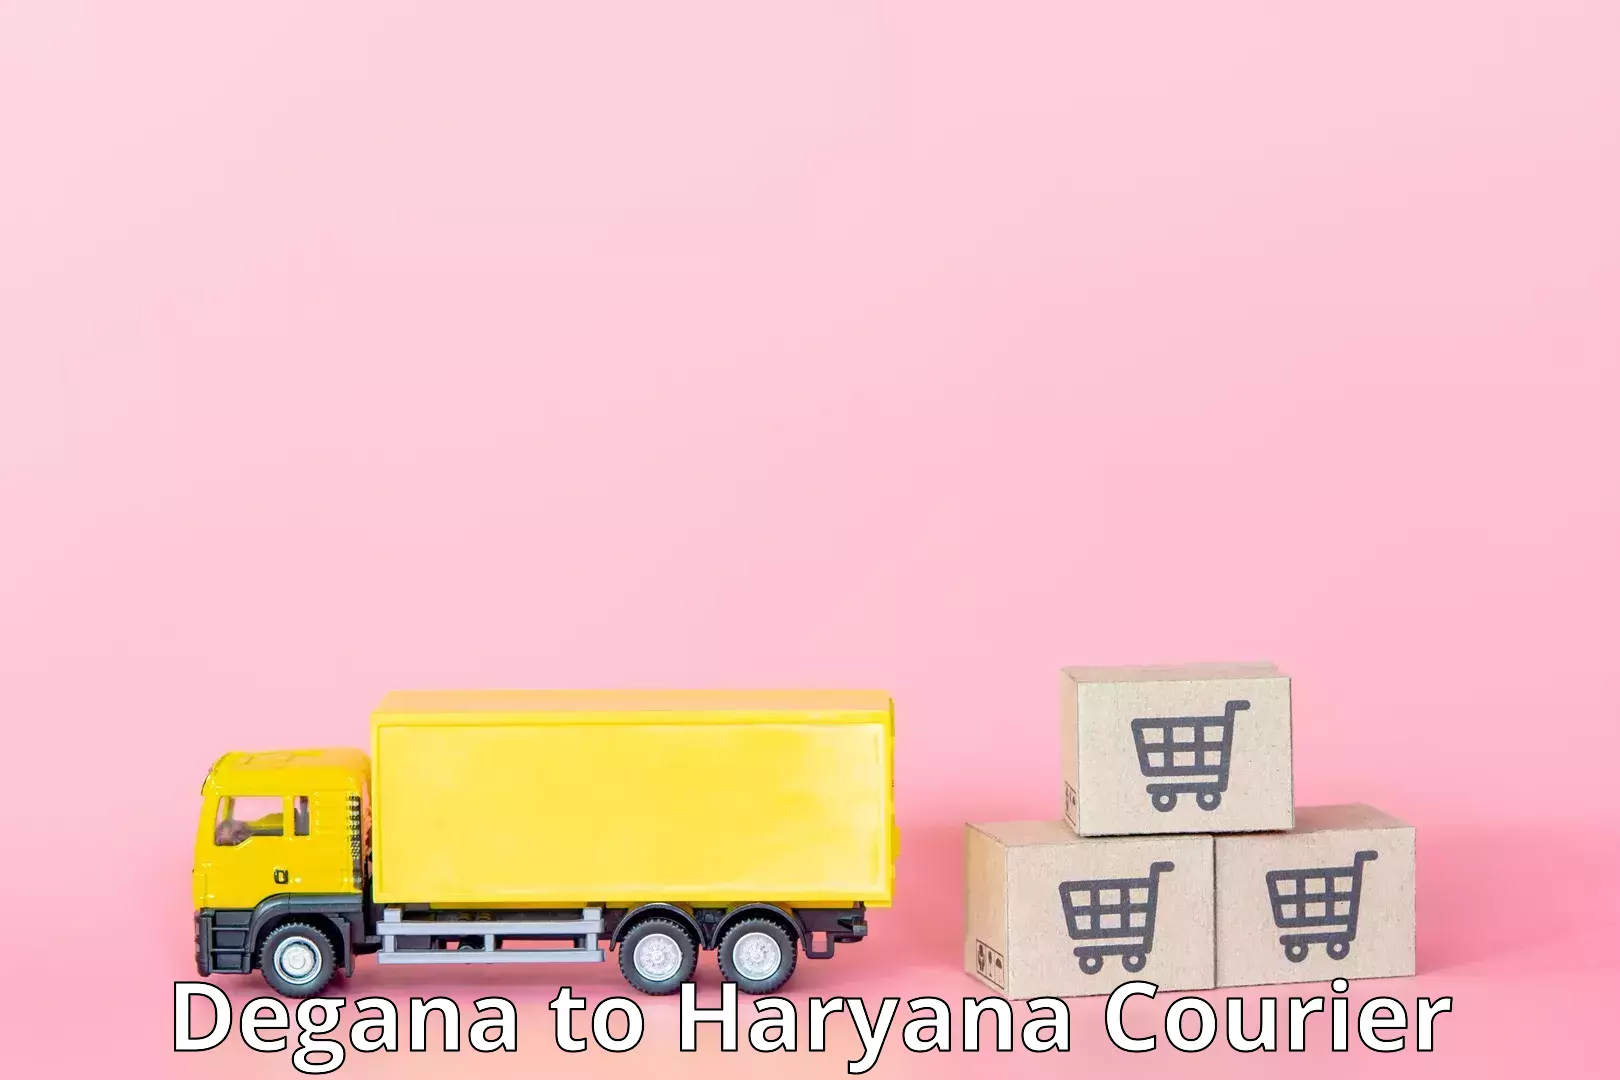 Special handling courier Degana to Shahabad Markanda